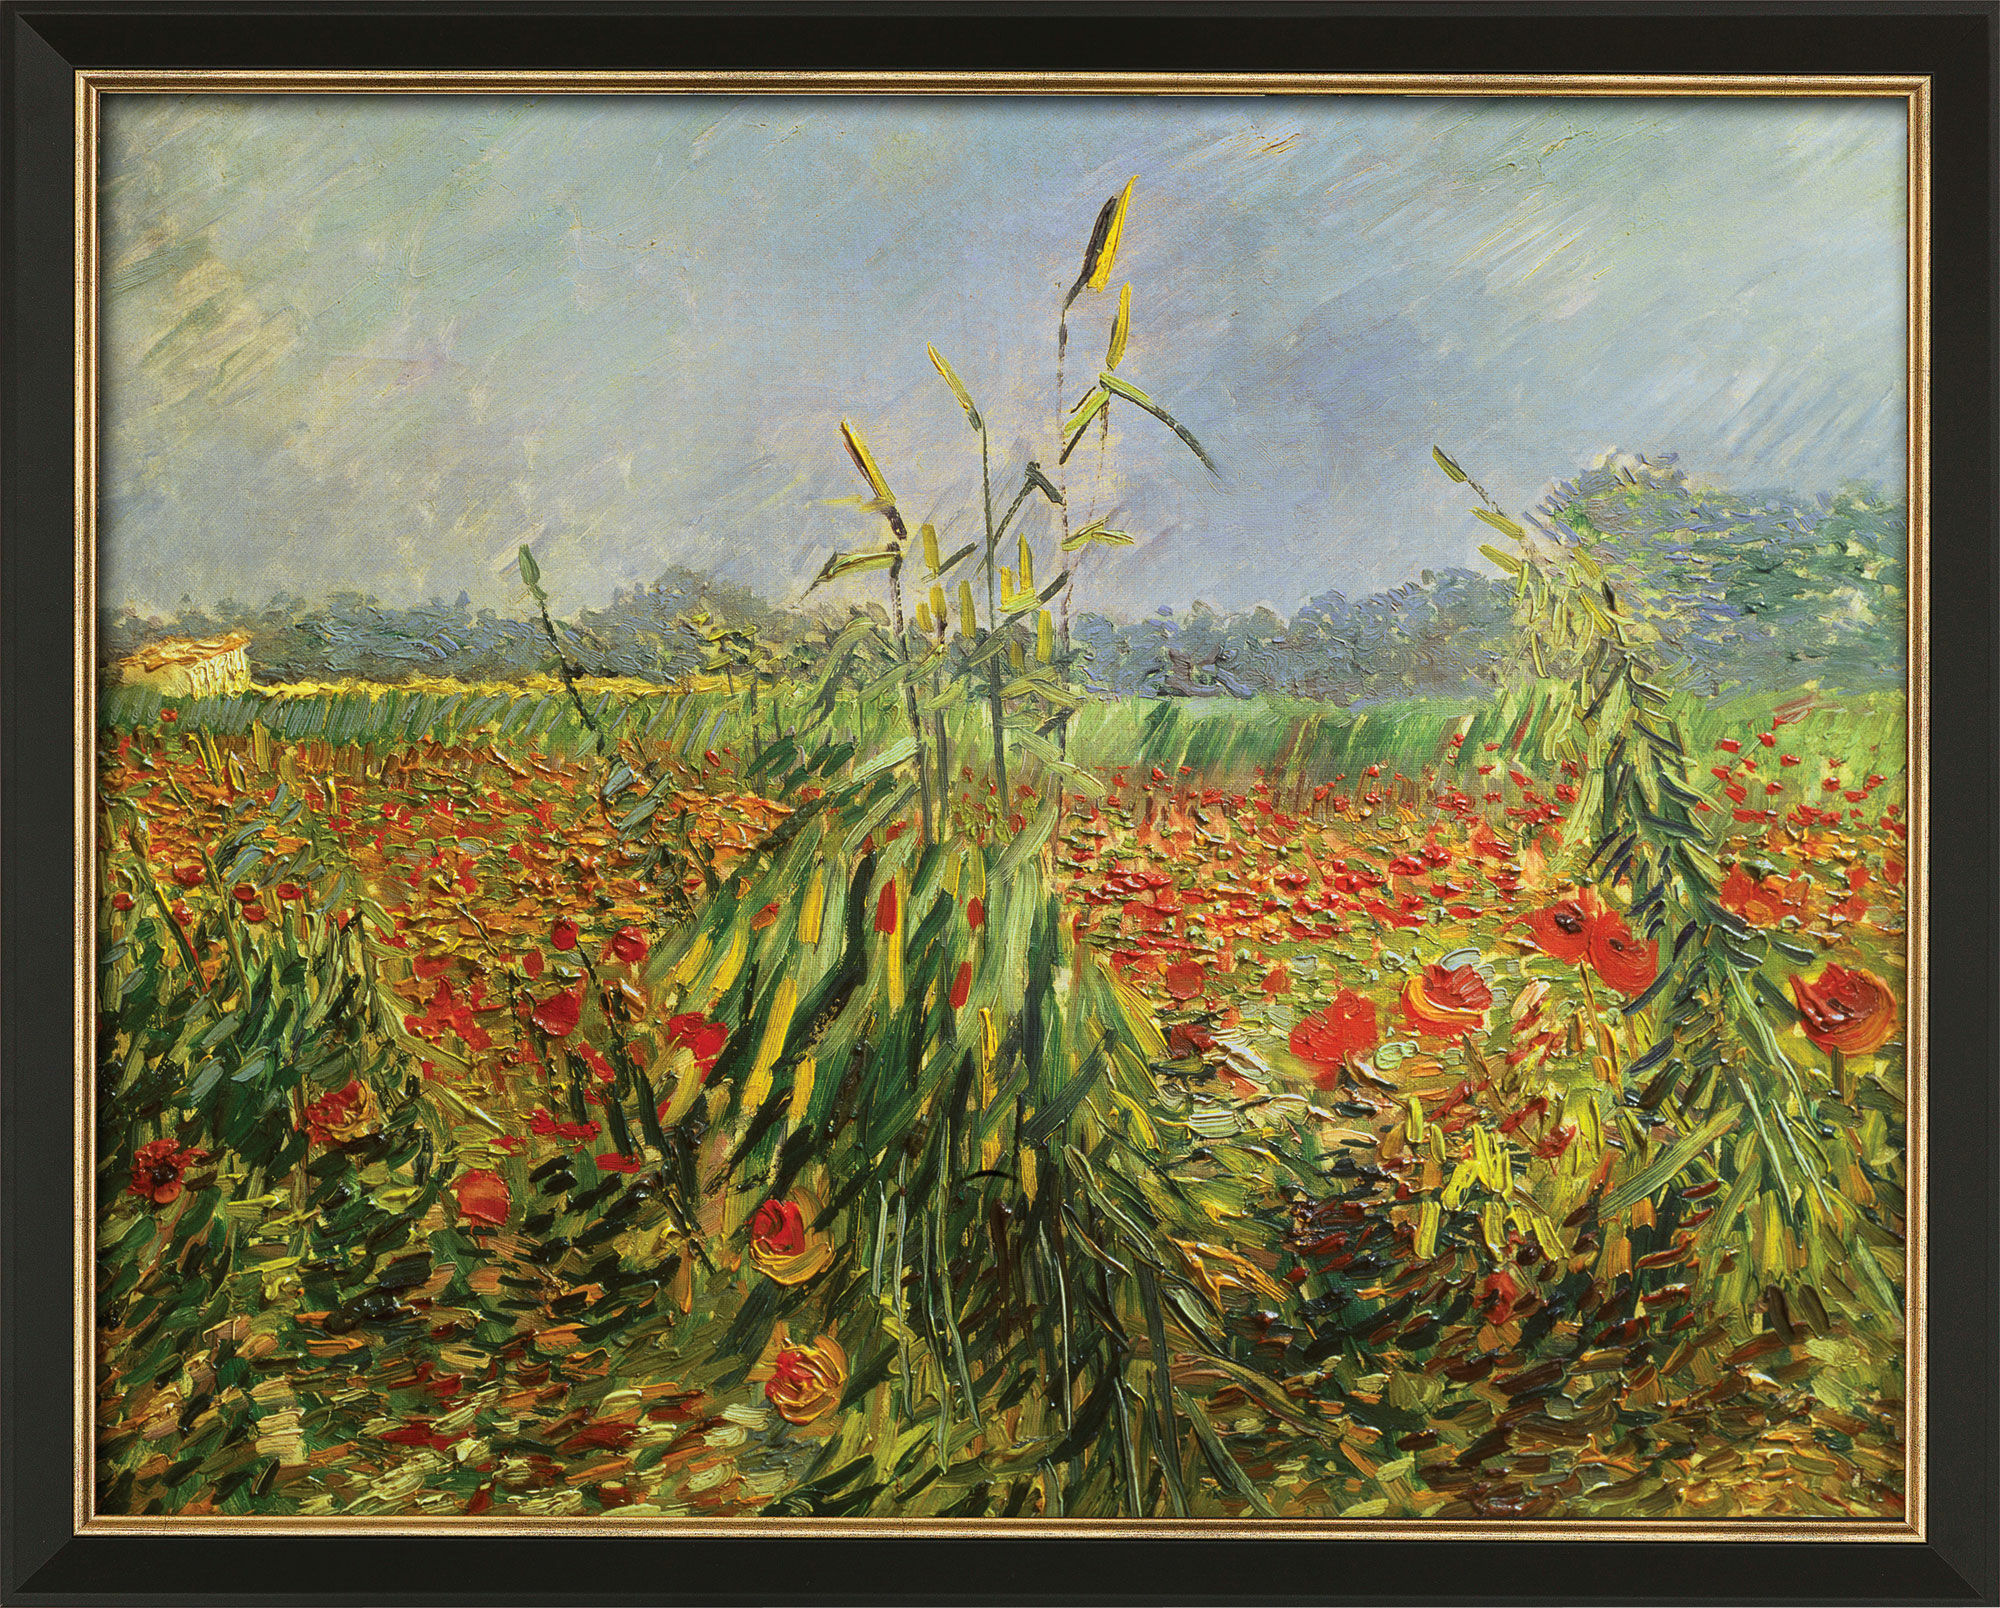 Tableau "Tiges de maïs vertes" (1888), encadré von Vincent van Gogh